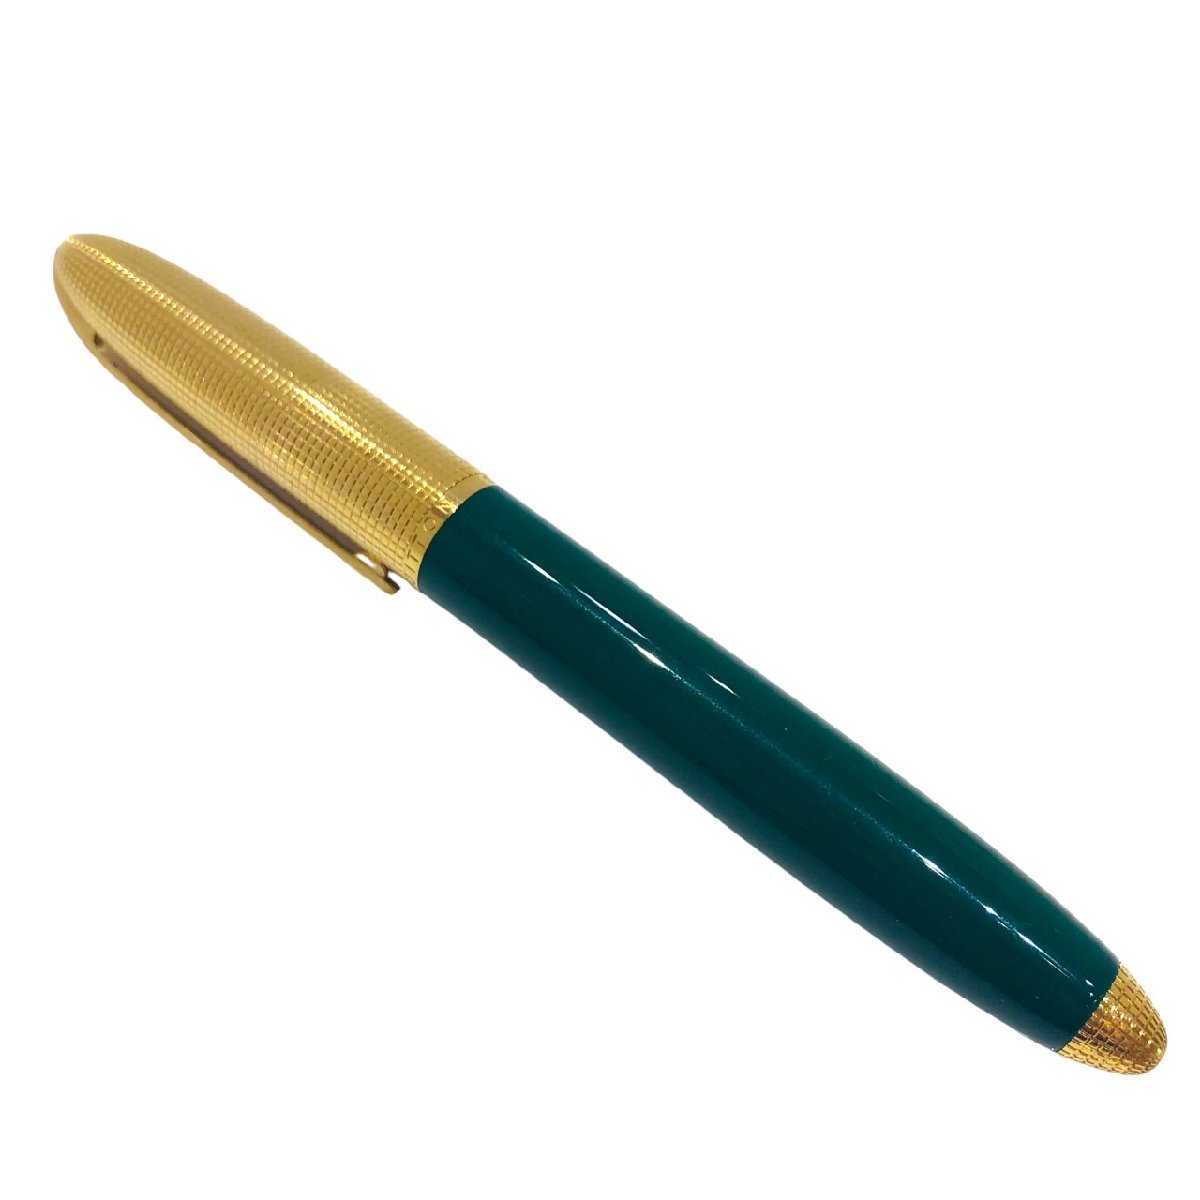 LOUIS VUITTON ルイヴィトン キャップ式 ボールペン グリーン×ゴールドカラー